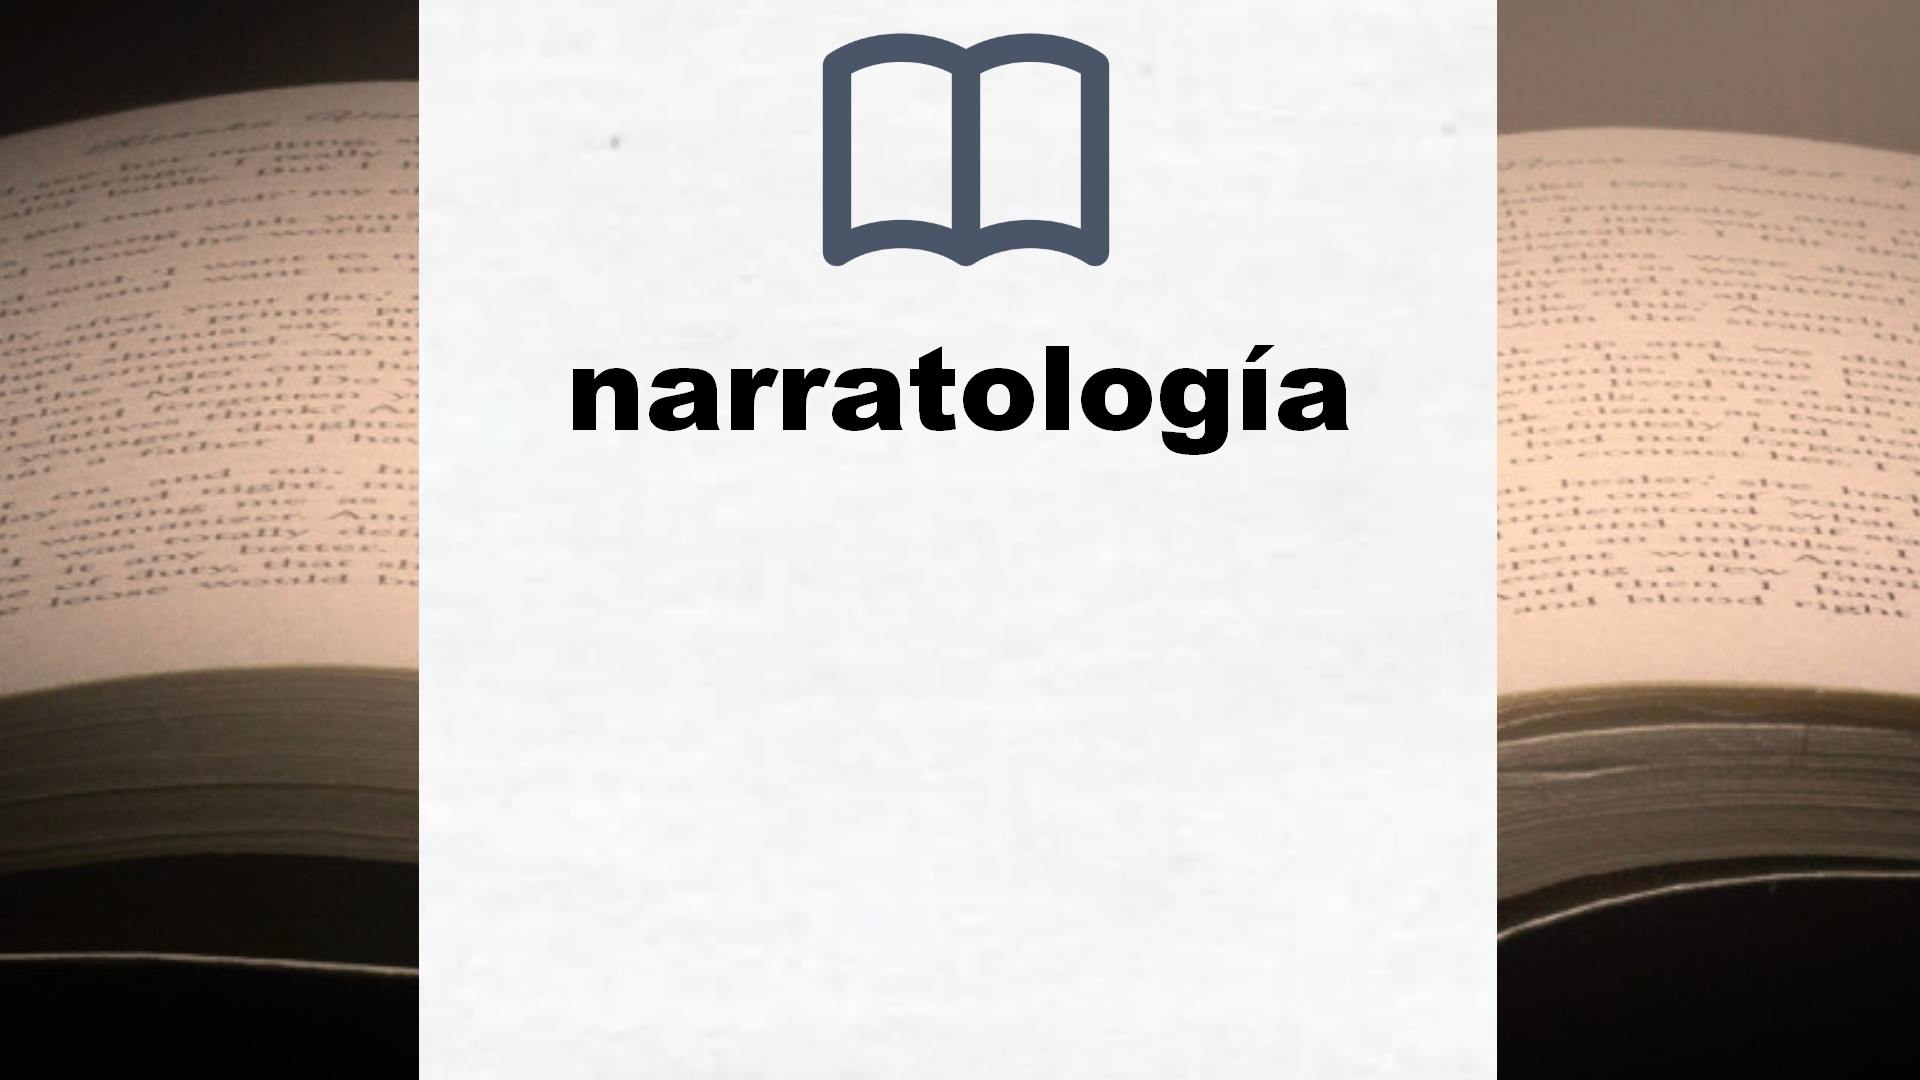 Libros sobre narratología